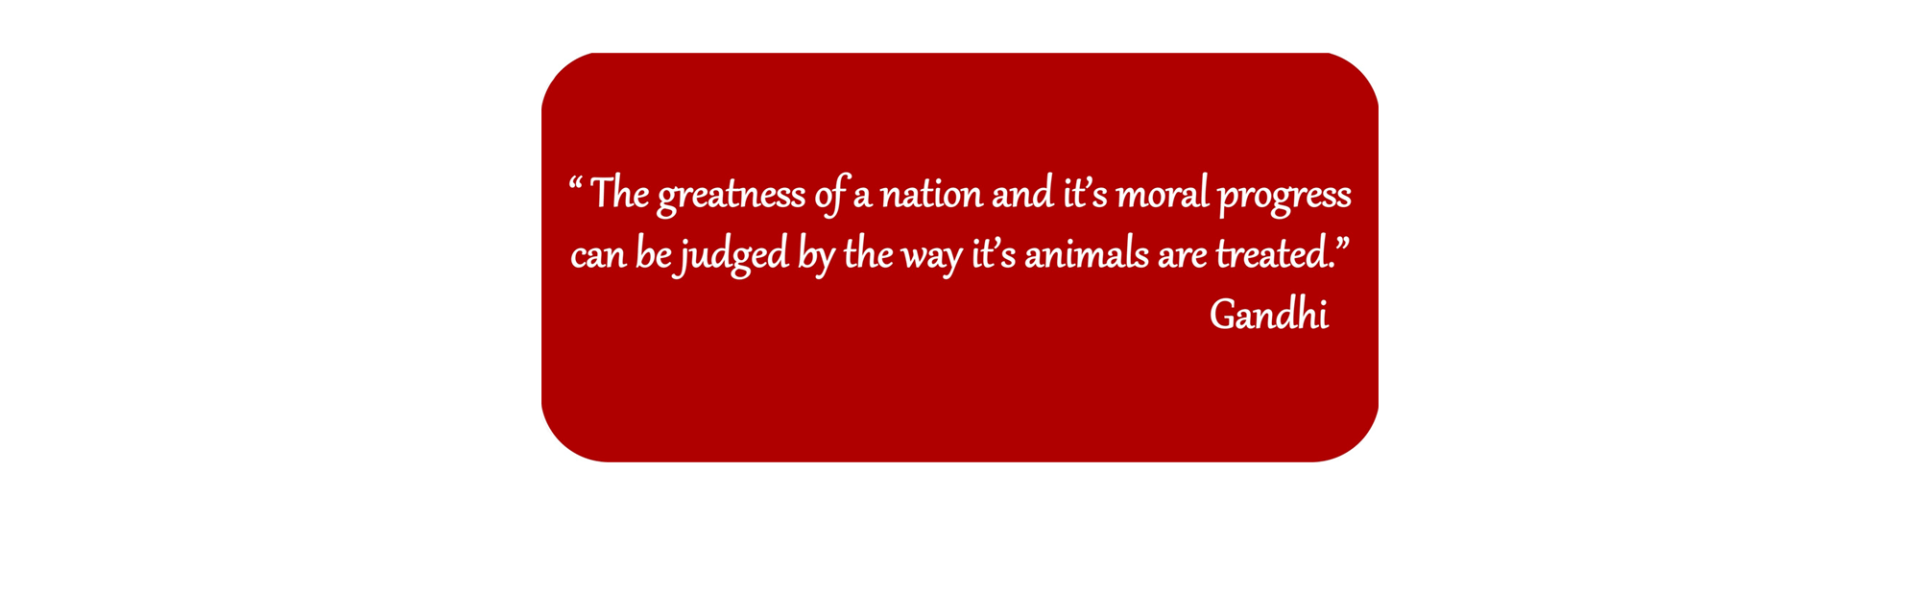 Gandhi quotation - 